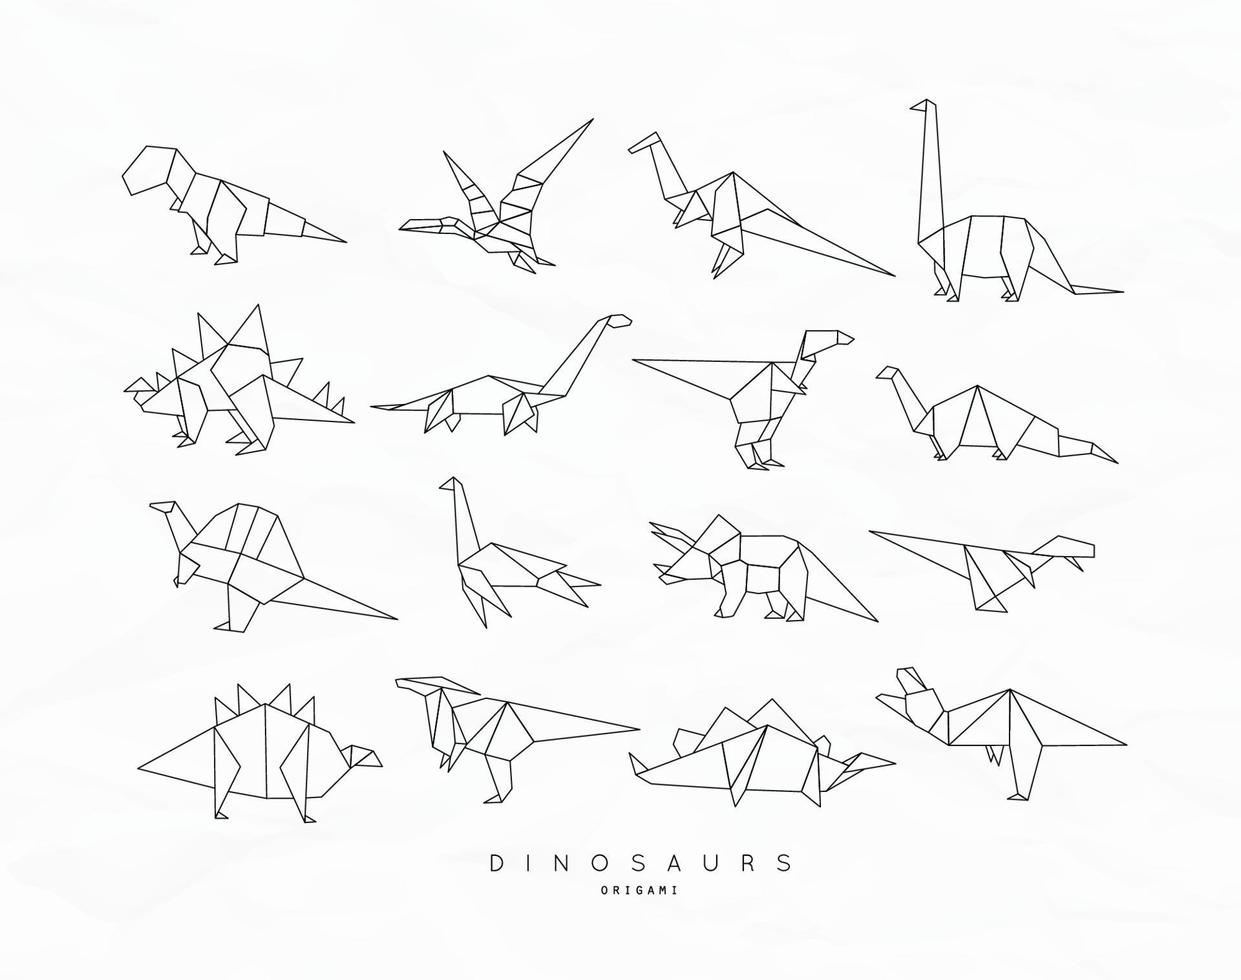 ensemble de dinosaures dans un style origami plat tyrannosaure, ptérodactyle, barosaurus, stégosaure, deinonychus, euoplocephalus, triceratops brachiosaurus dessin avec des lignes noires sur fond blanc vecteur